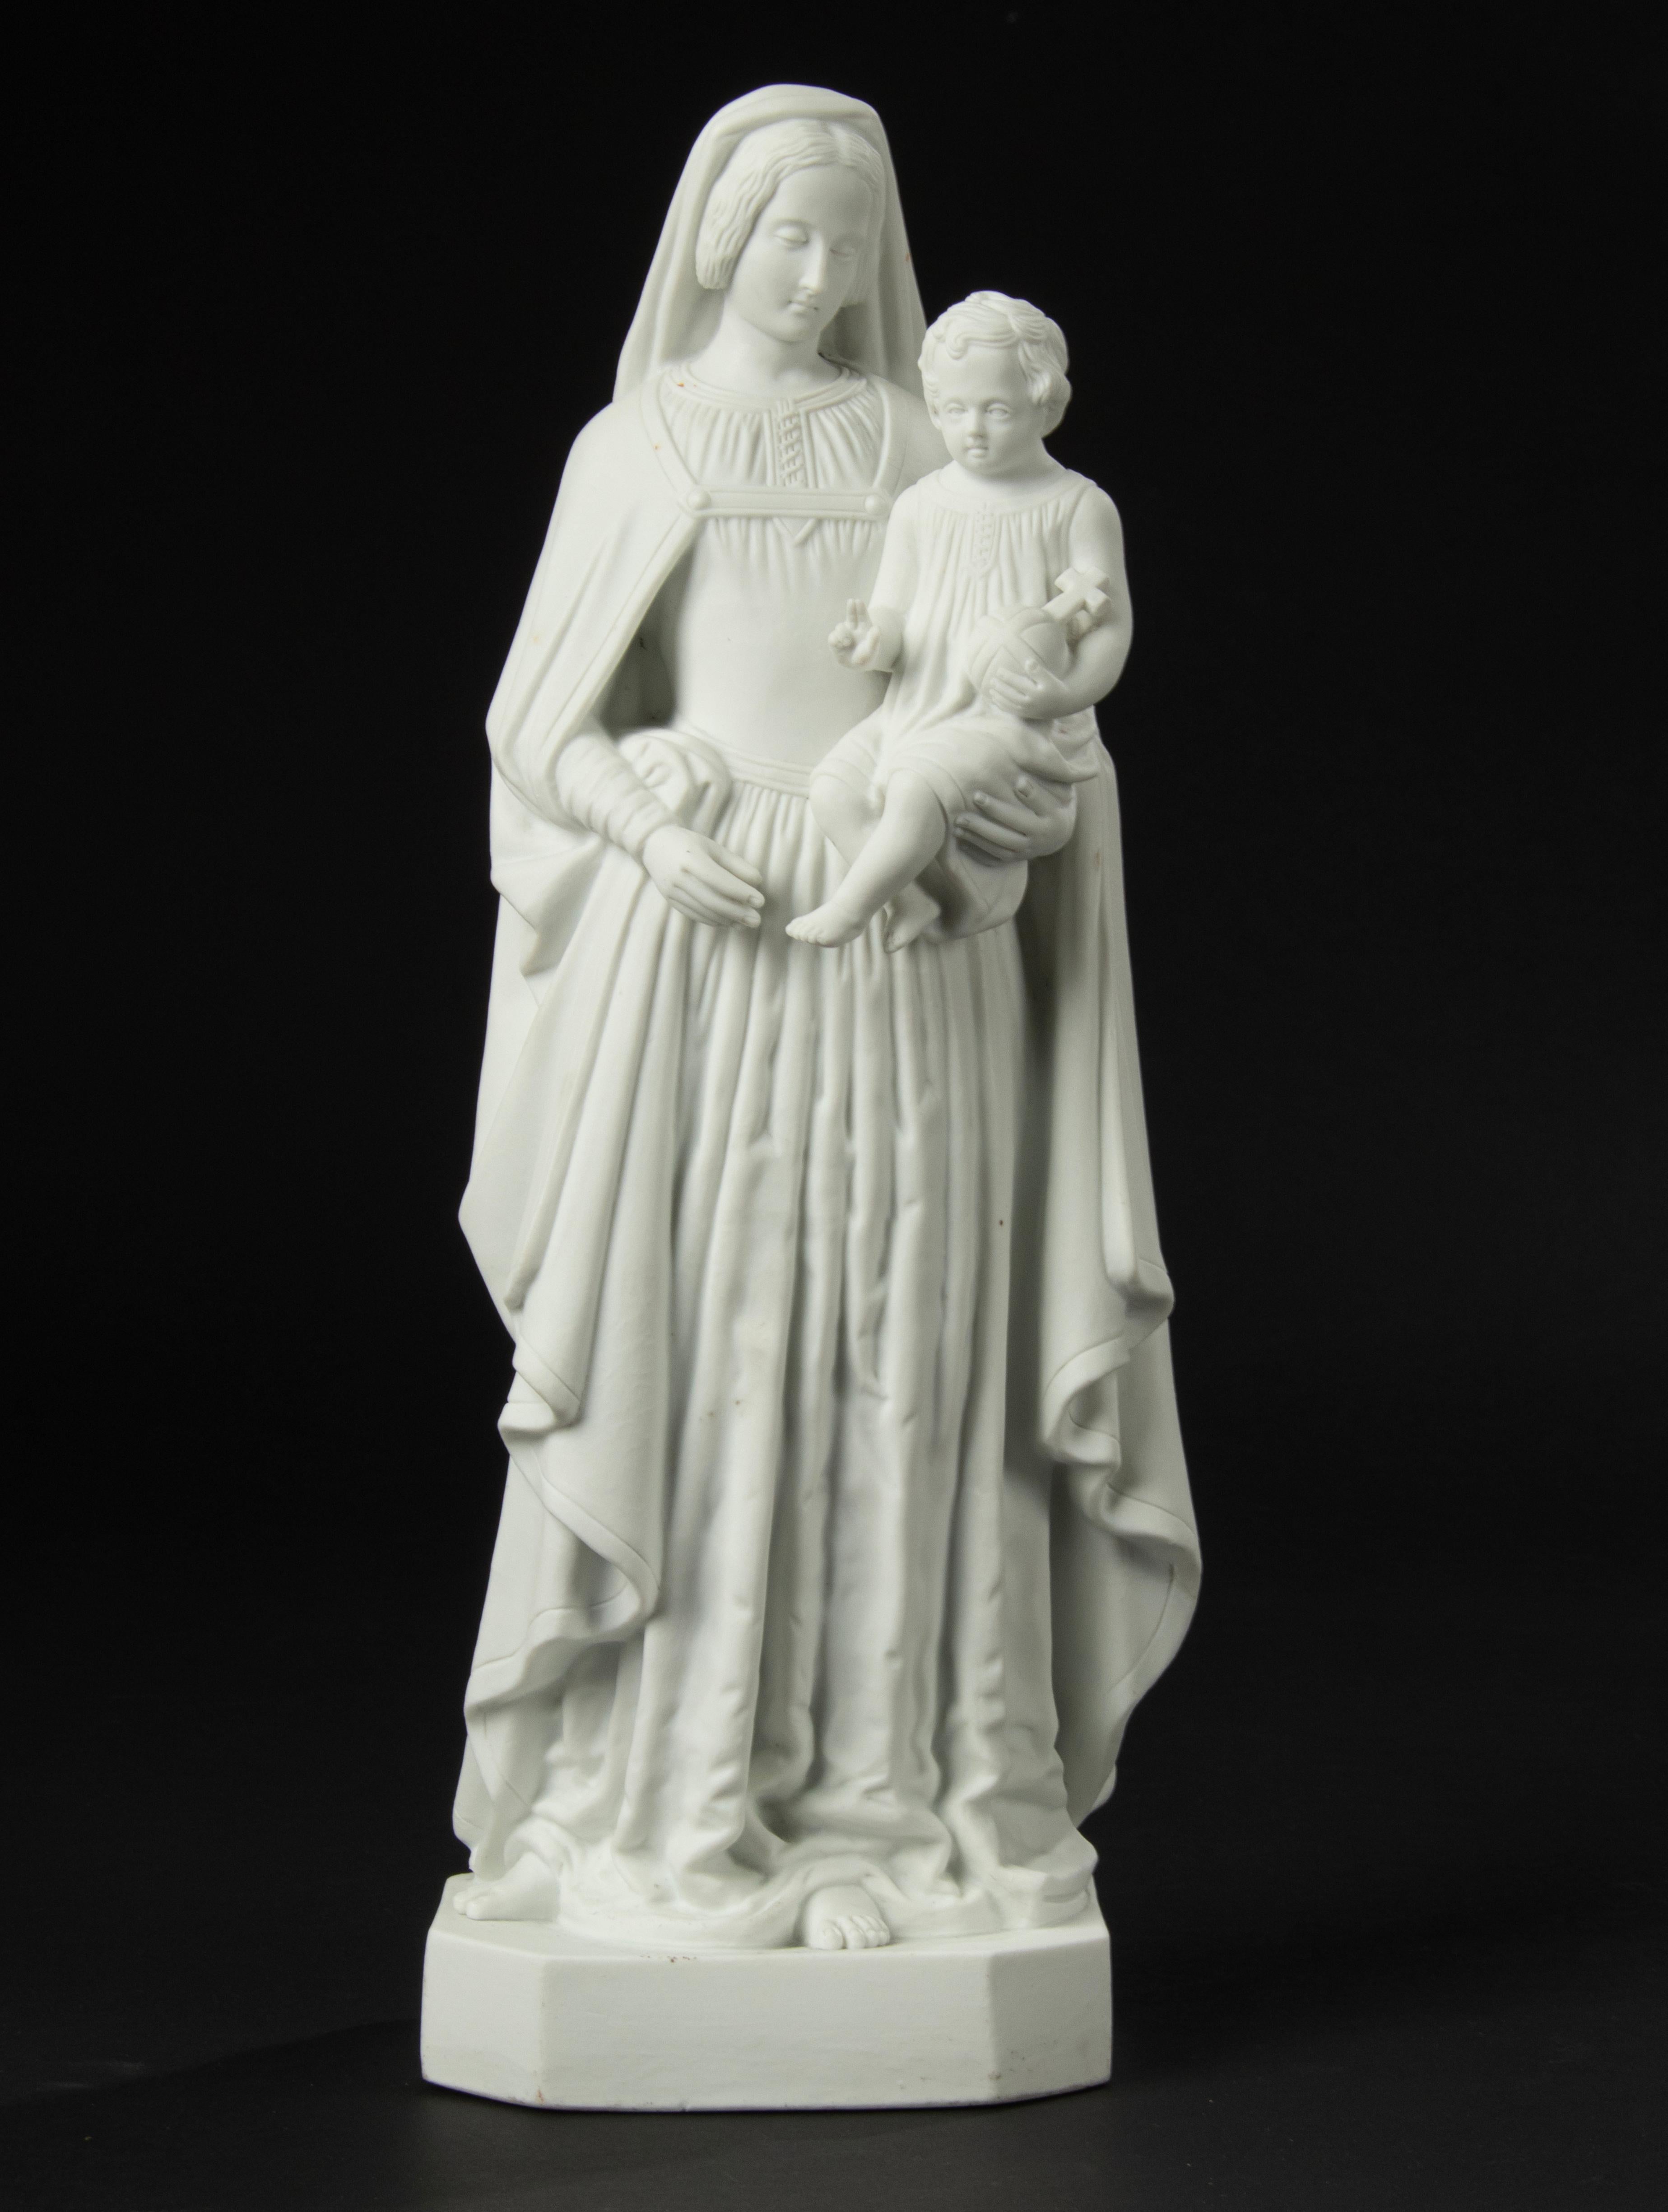 Schöne Skulptur aus Biskuitporzellan, die Maria mit dem Jesuskind auf dem Arm darstellt.
Die Skulptur ist auf dem Boden markiert, aber das Zeichen ist nicht eindeutig. Hersteller unbekannt.
Die Statue ist in sehr gutem Zustand. Kostenloser Versand.